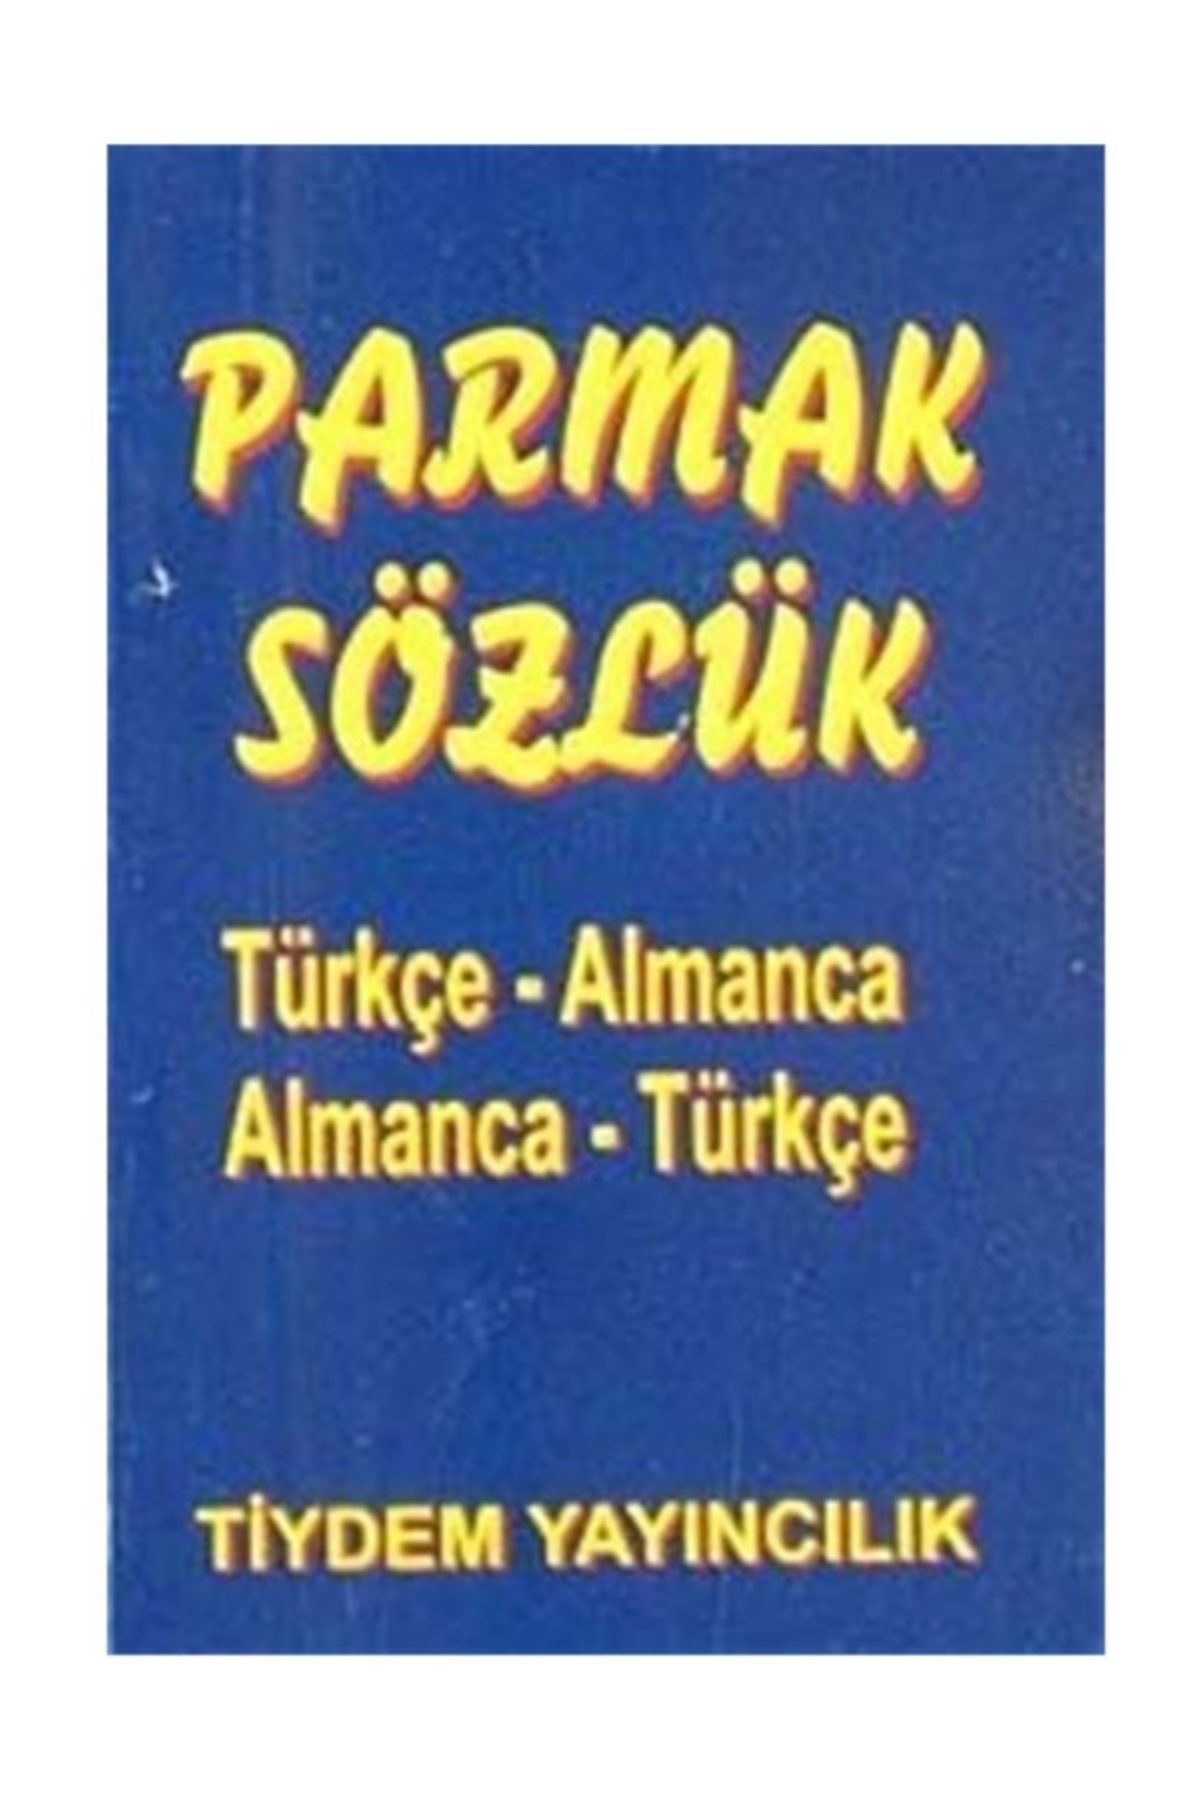 Tiydem Yayıncılık Parmak Sözlük / Türkçe-almanca